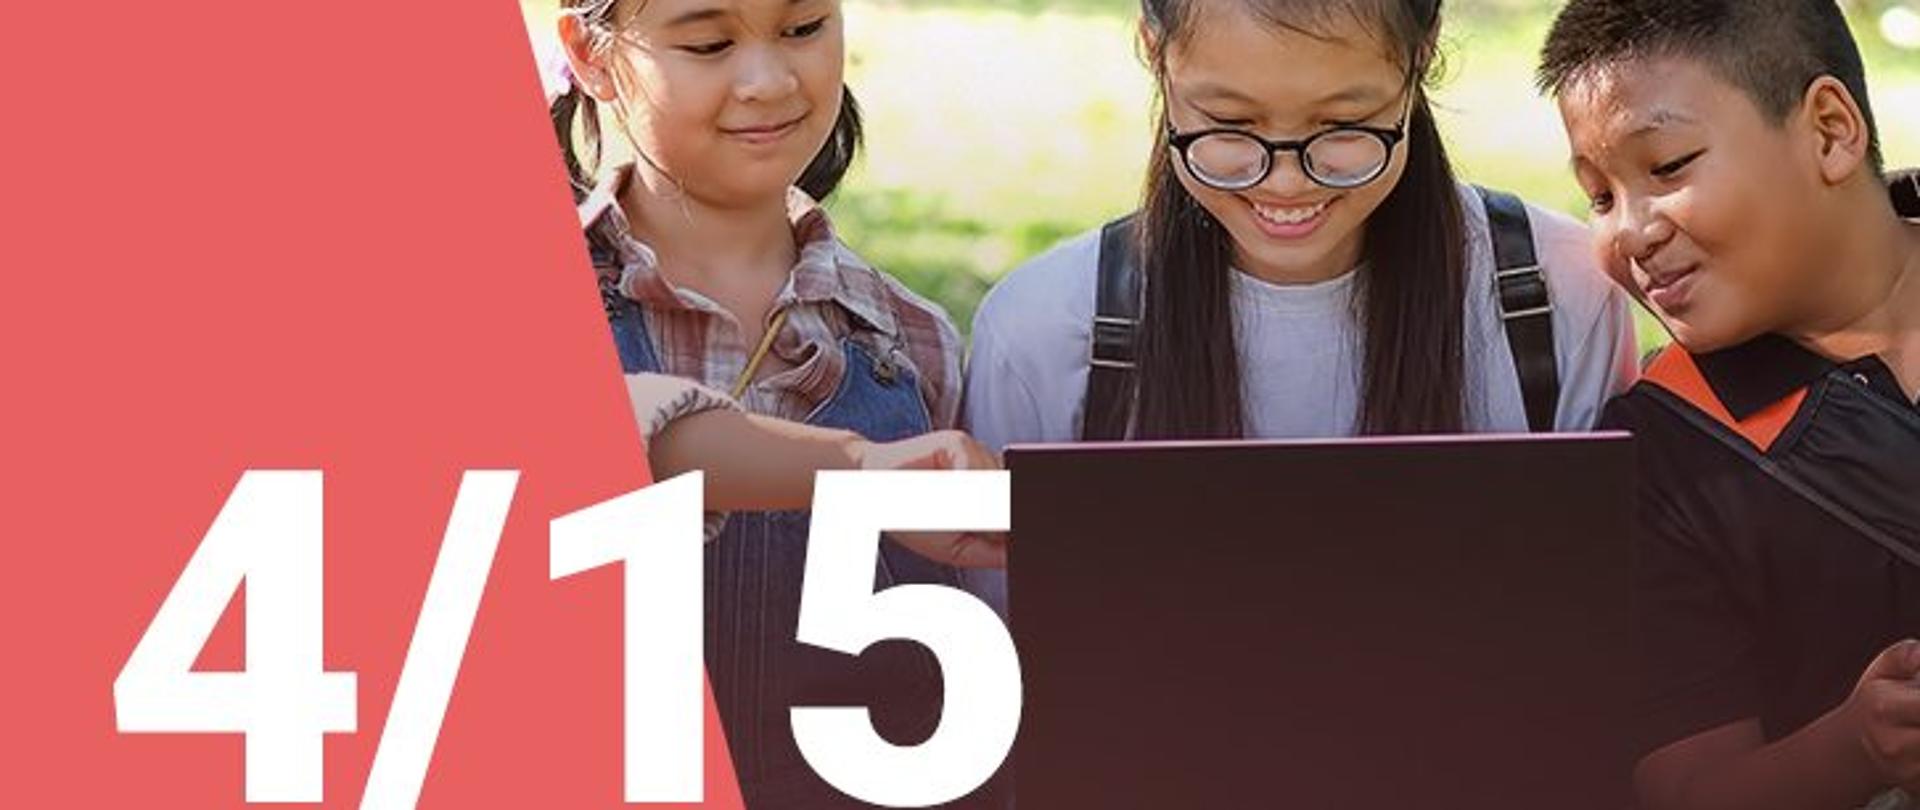 Na zdjęciu widzimy dwie dziewczynki oraz chłopca patrzących z uśmiechem na ekran laptopa. W dolnym lewym roku widoczna jest numeracja zdjęcia (4/15) 